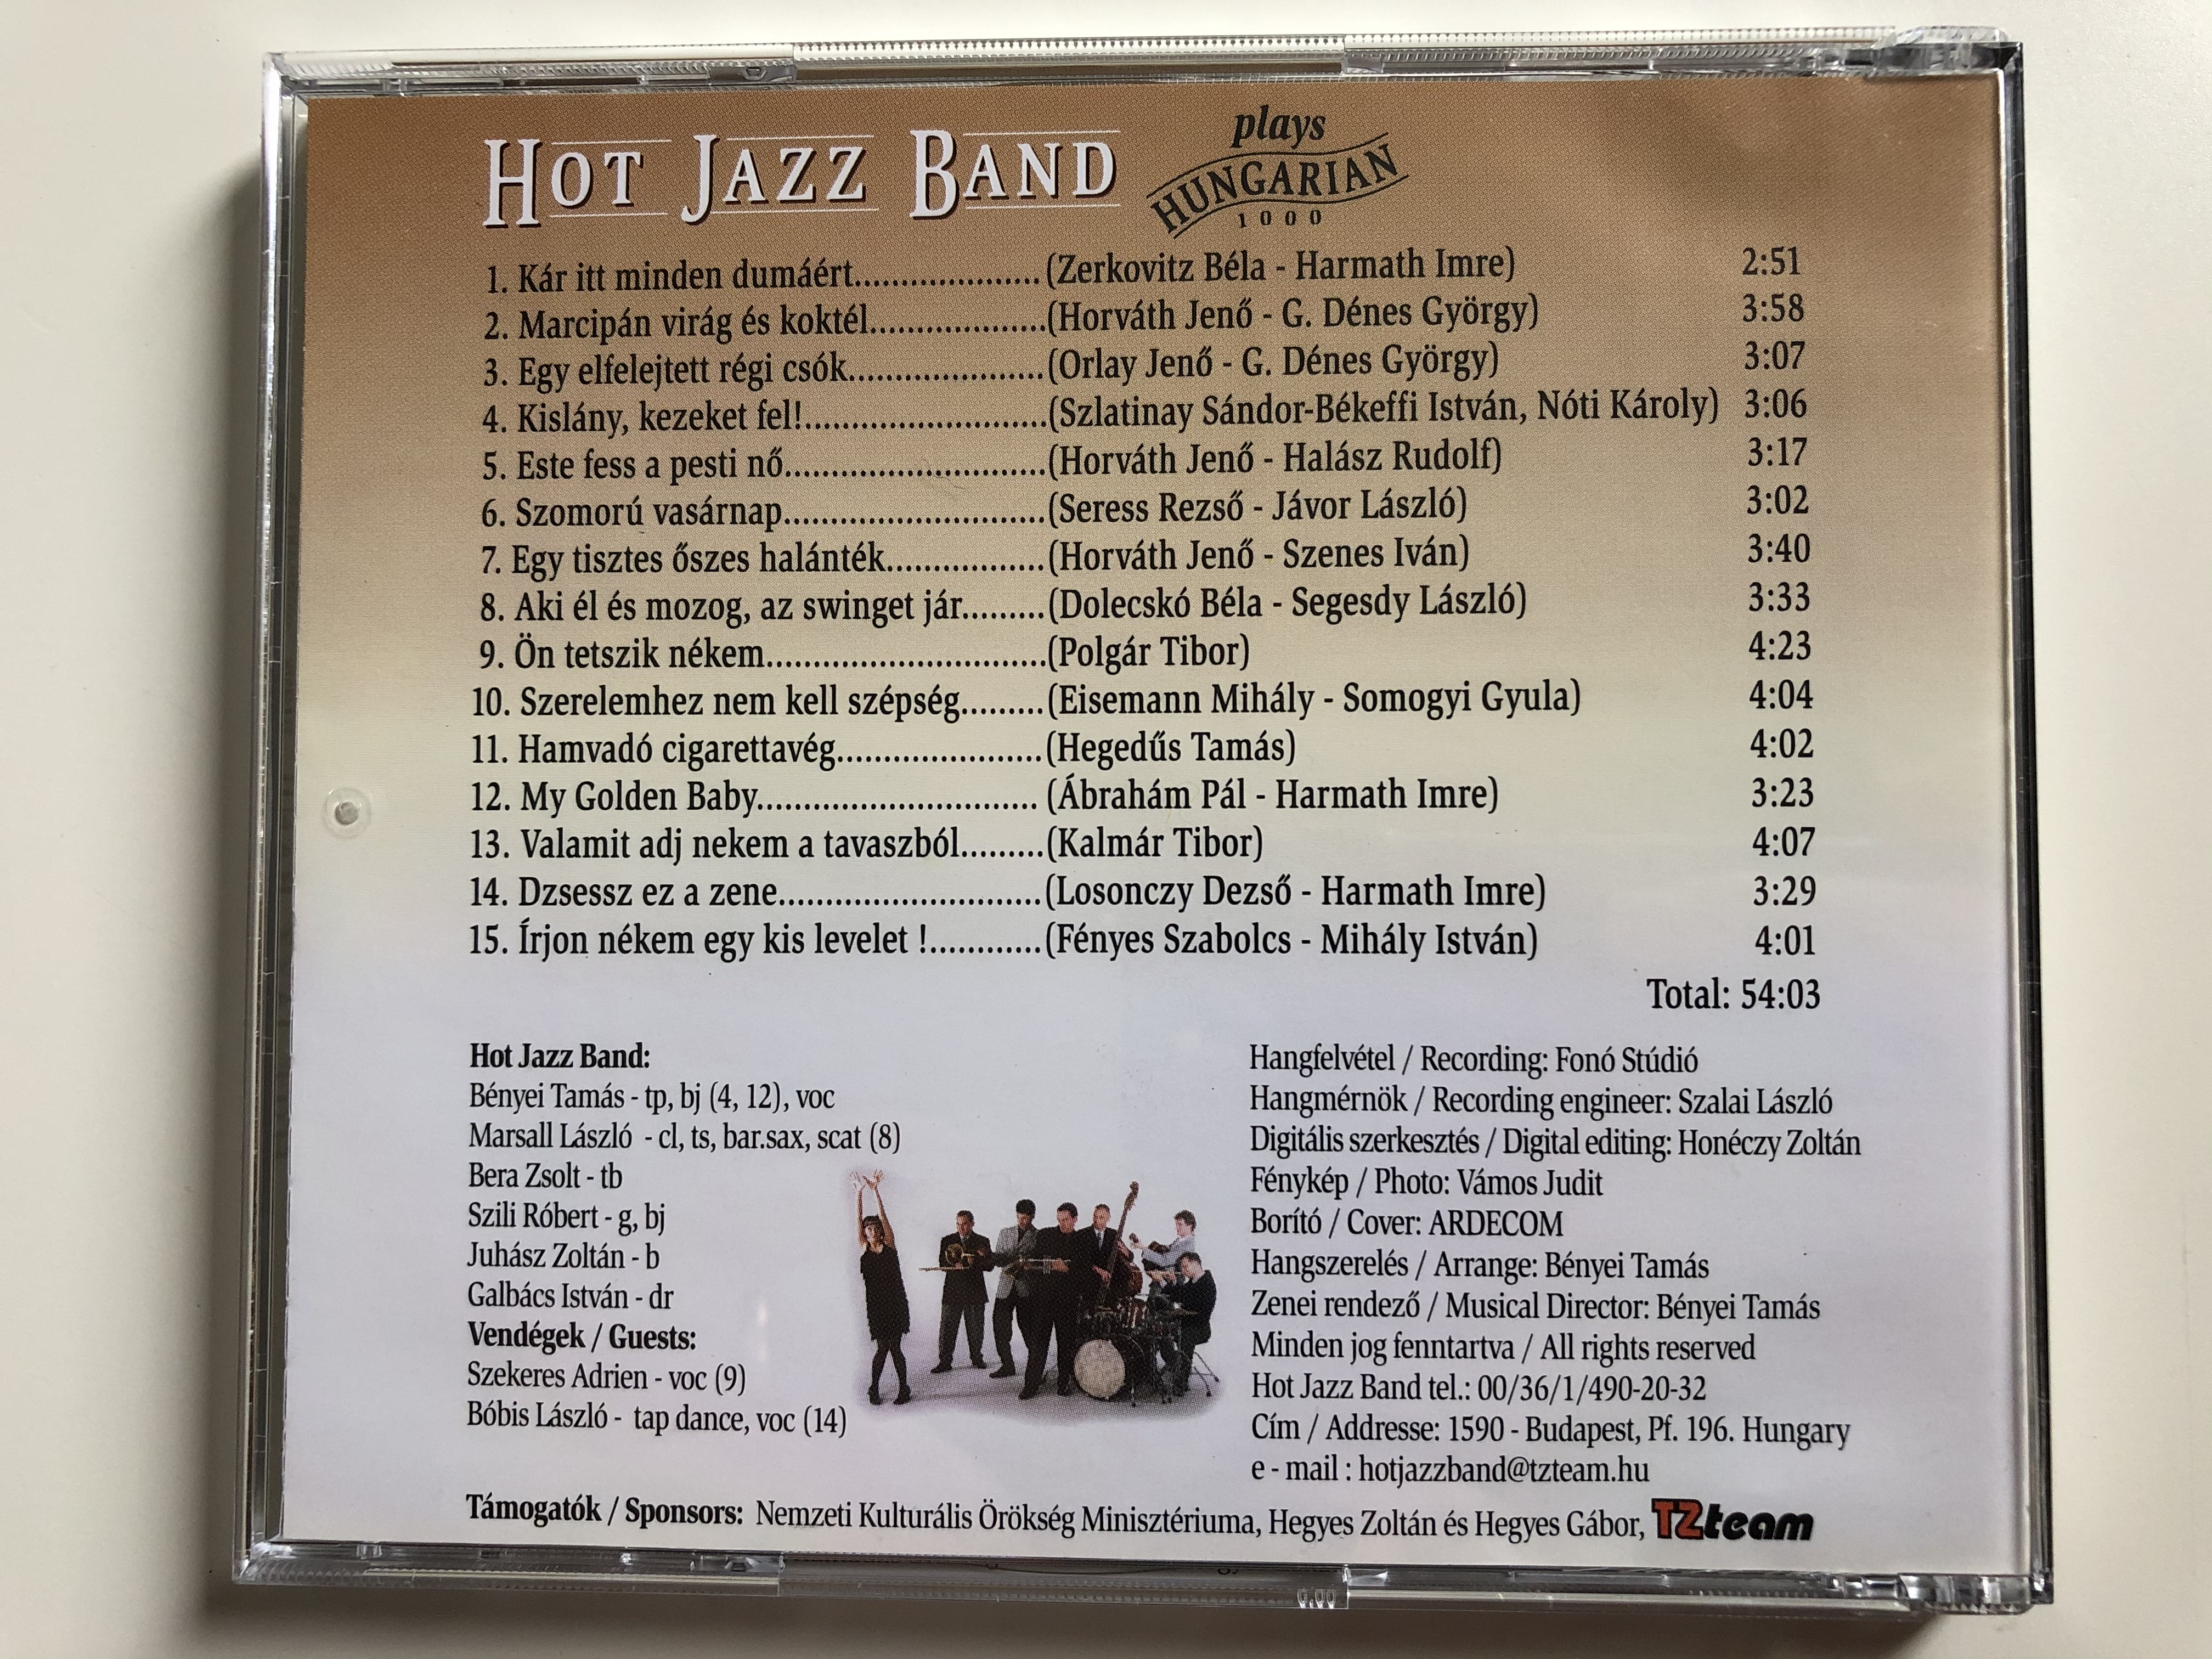 hot-jazz-band-plays-hungarian-1000-kisl-ny-kezeket-fel-hamvad-cigarettav-g-k-r-itt-minden-dum-rt-szomor-vas-rnap-este-fess-a-pesti-n-es-meg-tiz-dal-a-multbol-hot-jazz-band-audio-cd-5-.jpg